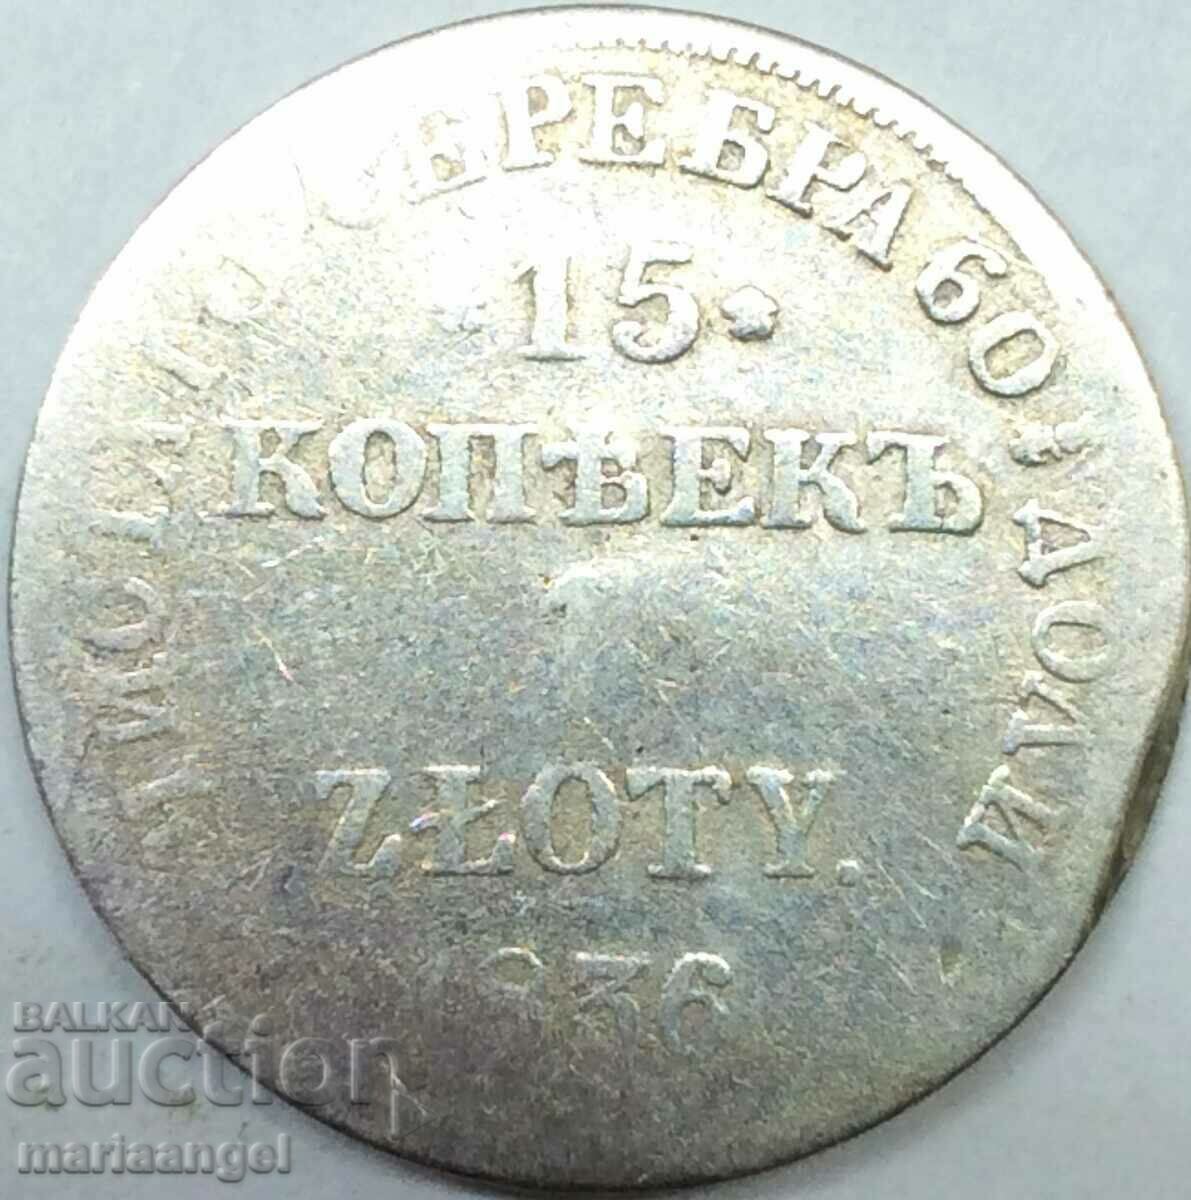 Russia Poland 15 kopecks 1 silver zloty